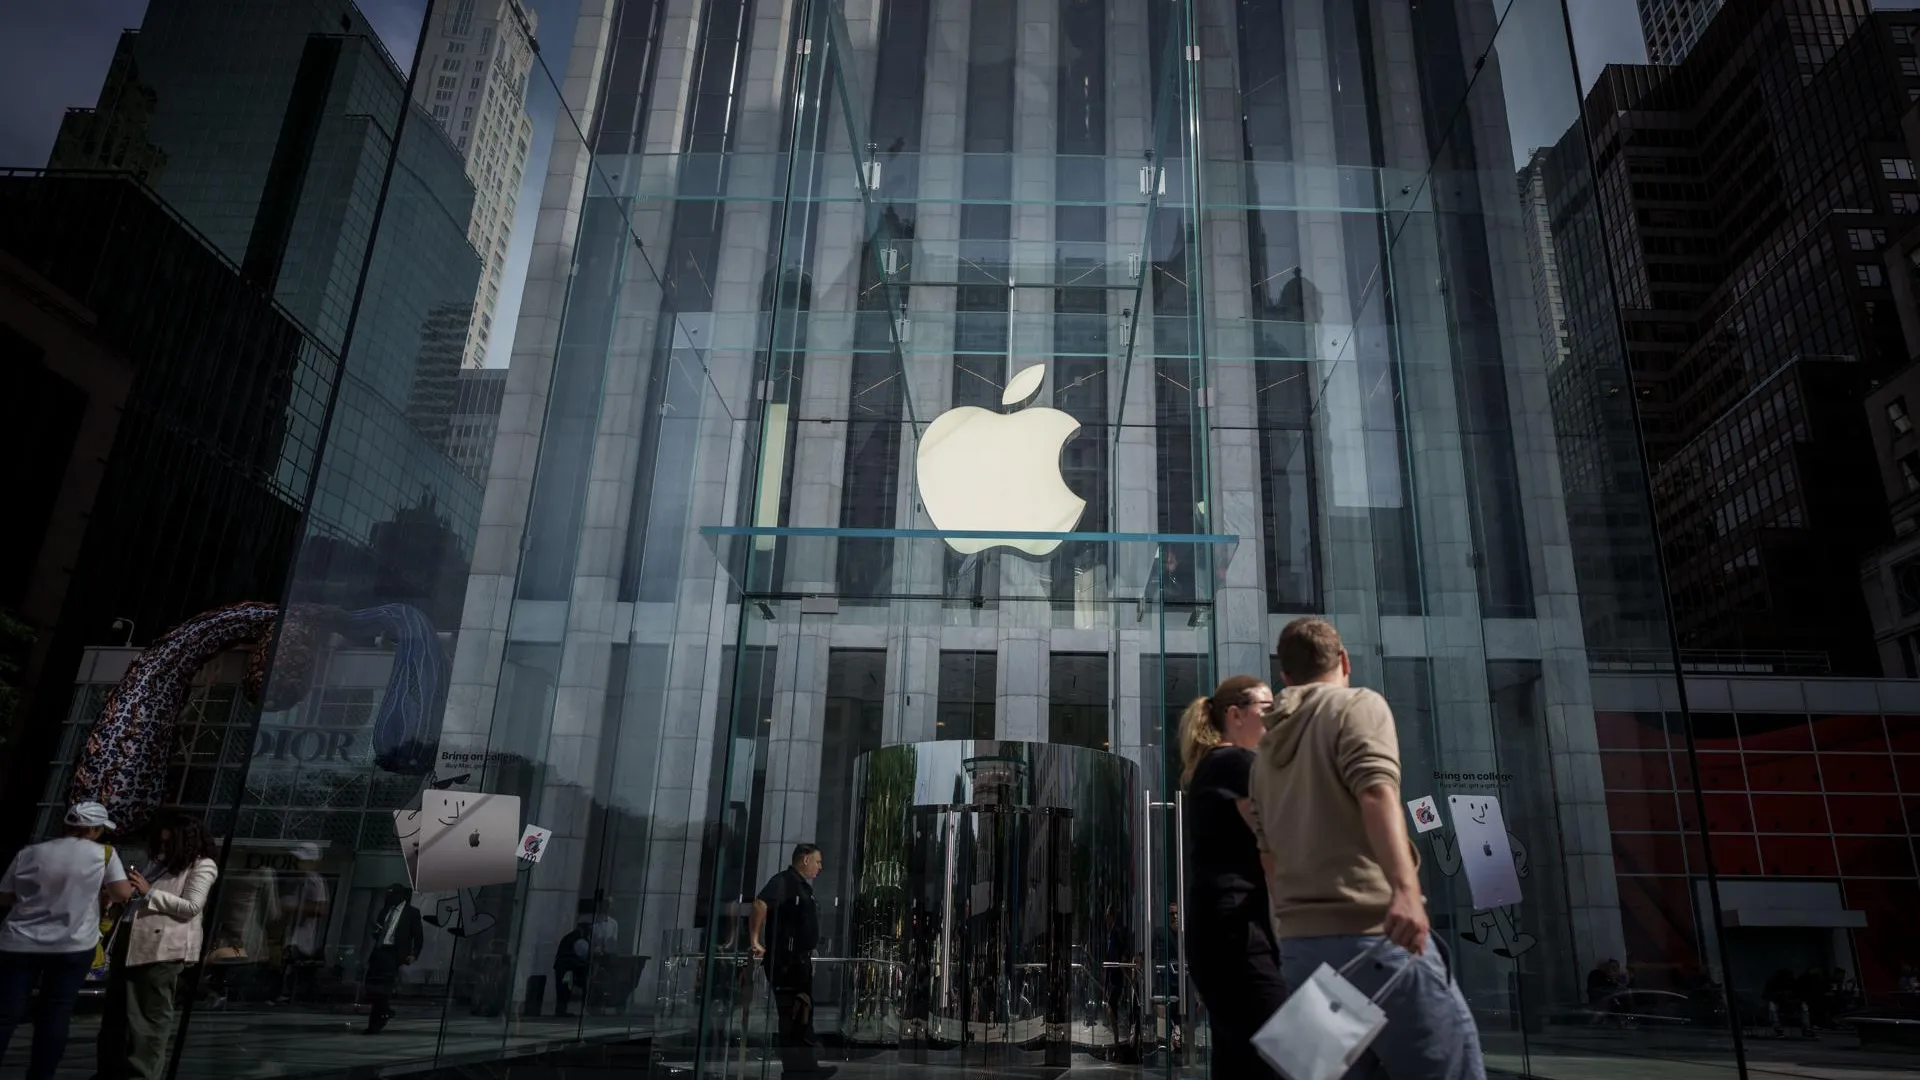 Официальный магазин Apple в Нью-Йорке. Фото: Michael Kappeler / dpa